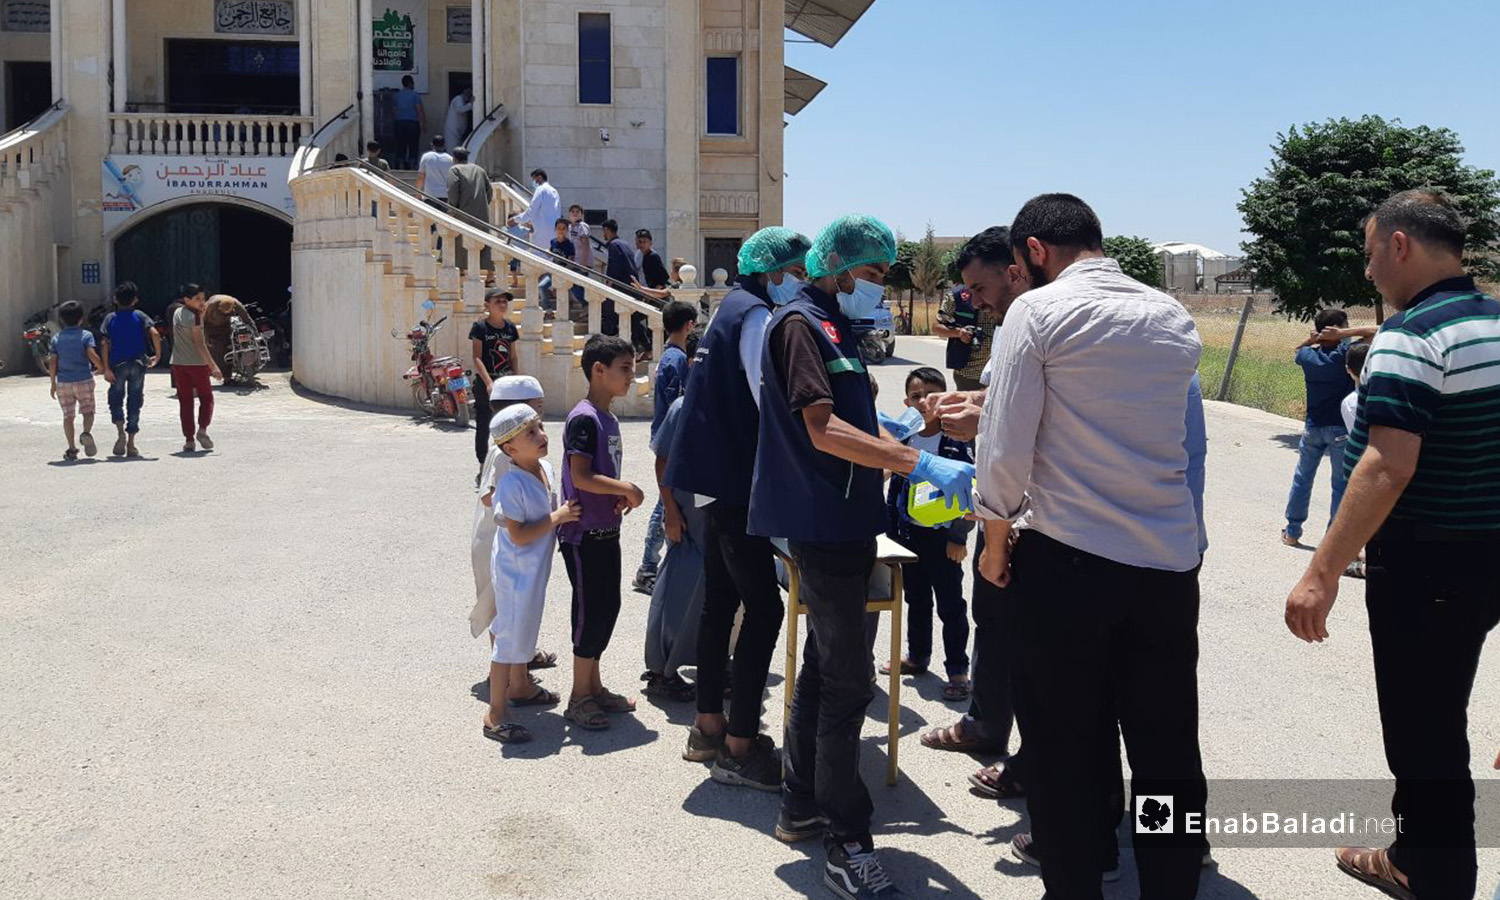 توزيع كمامات ومعقمات على ابواب بعض المساجد بريف ادلب الشمالي كإجراء وقائي ضد انتشار فيروس "كورونا المستجد" - 7 تموز 2020 (عنب بلدي/إياد عبد الجواد)